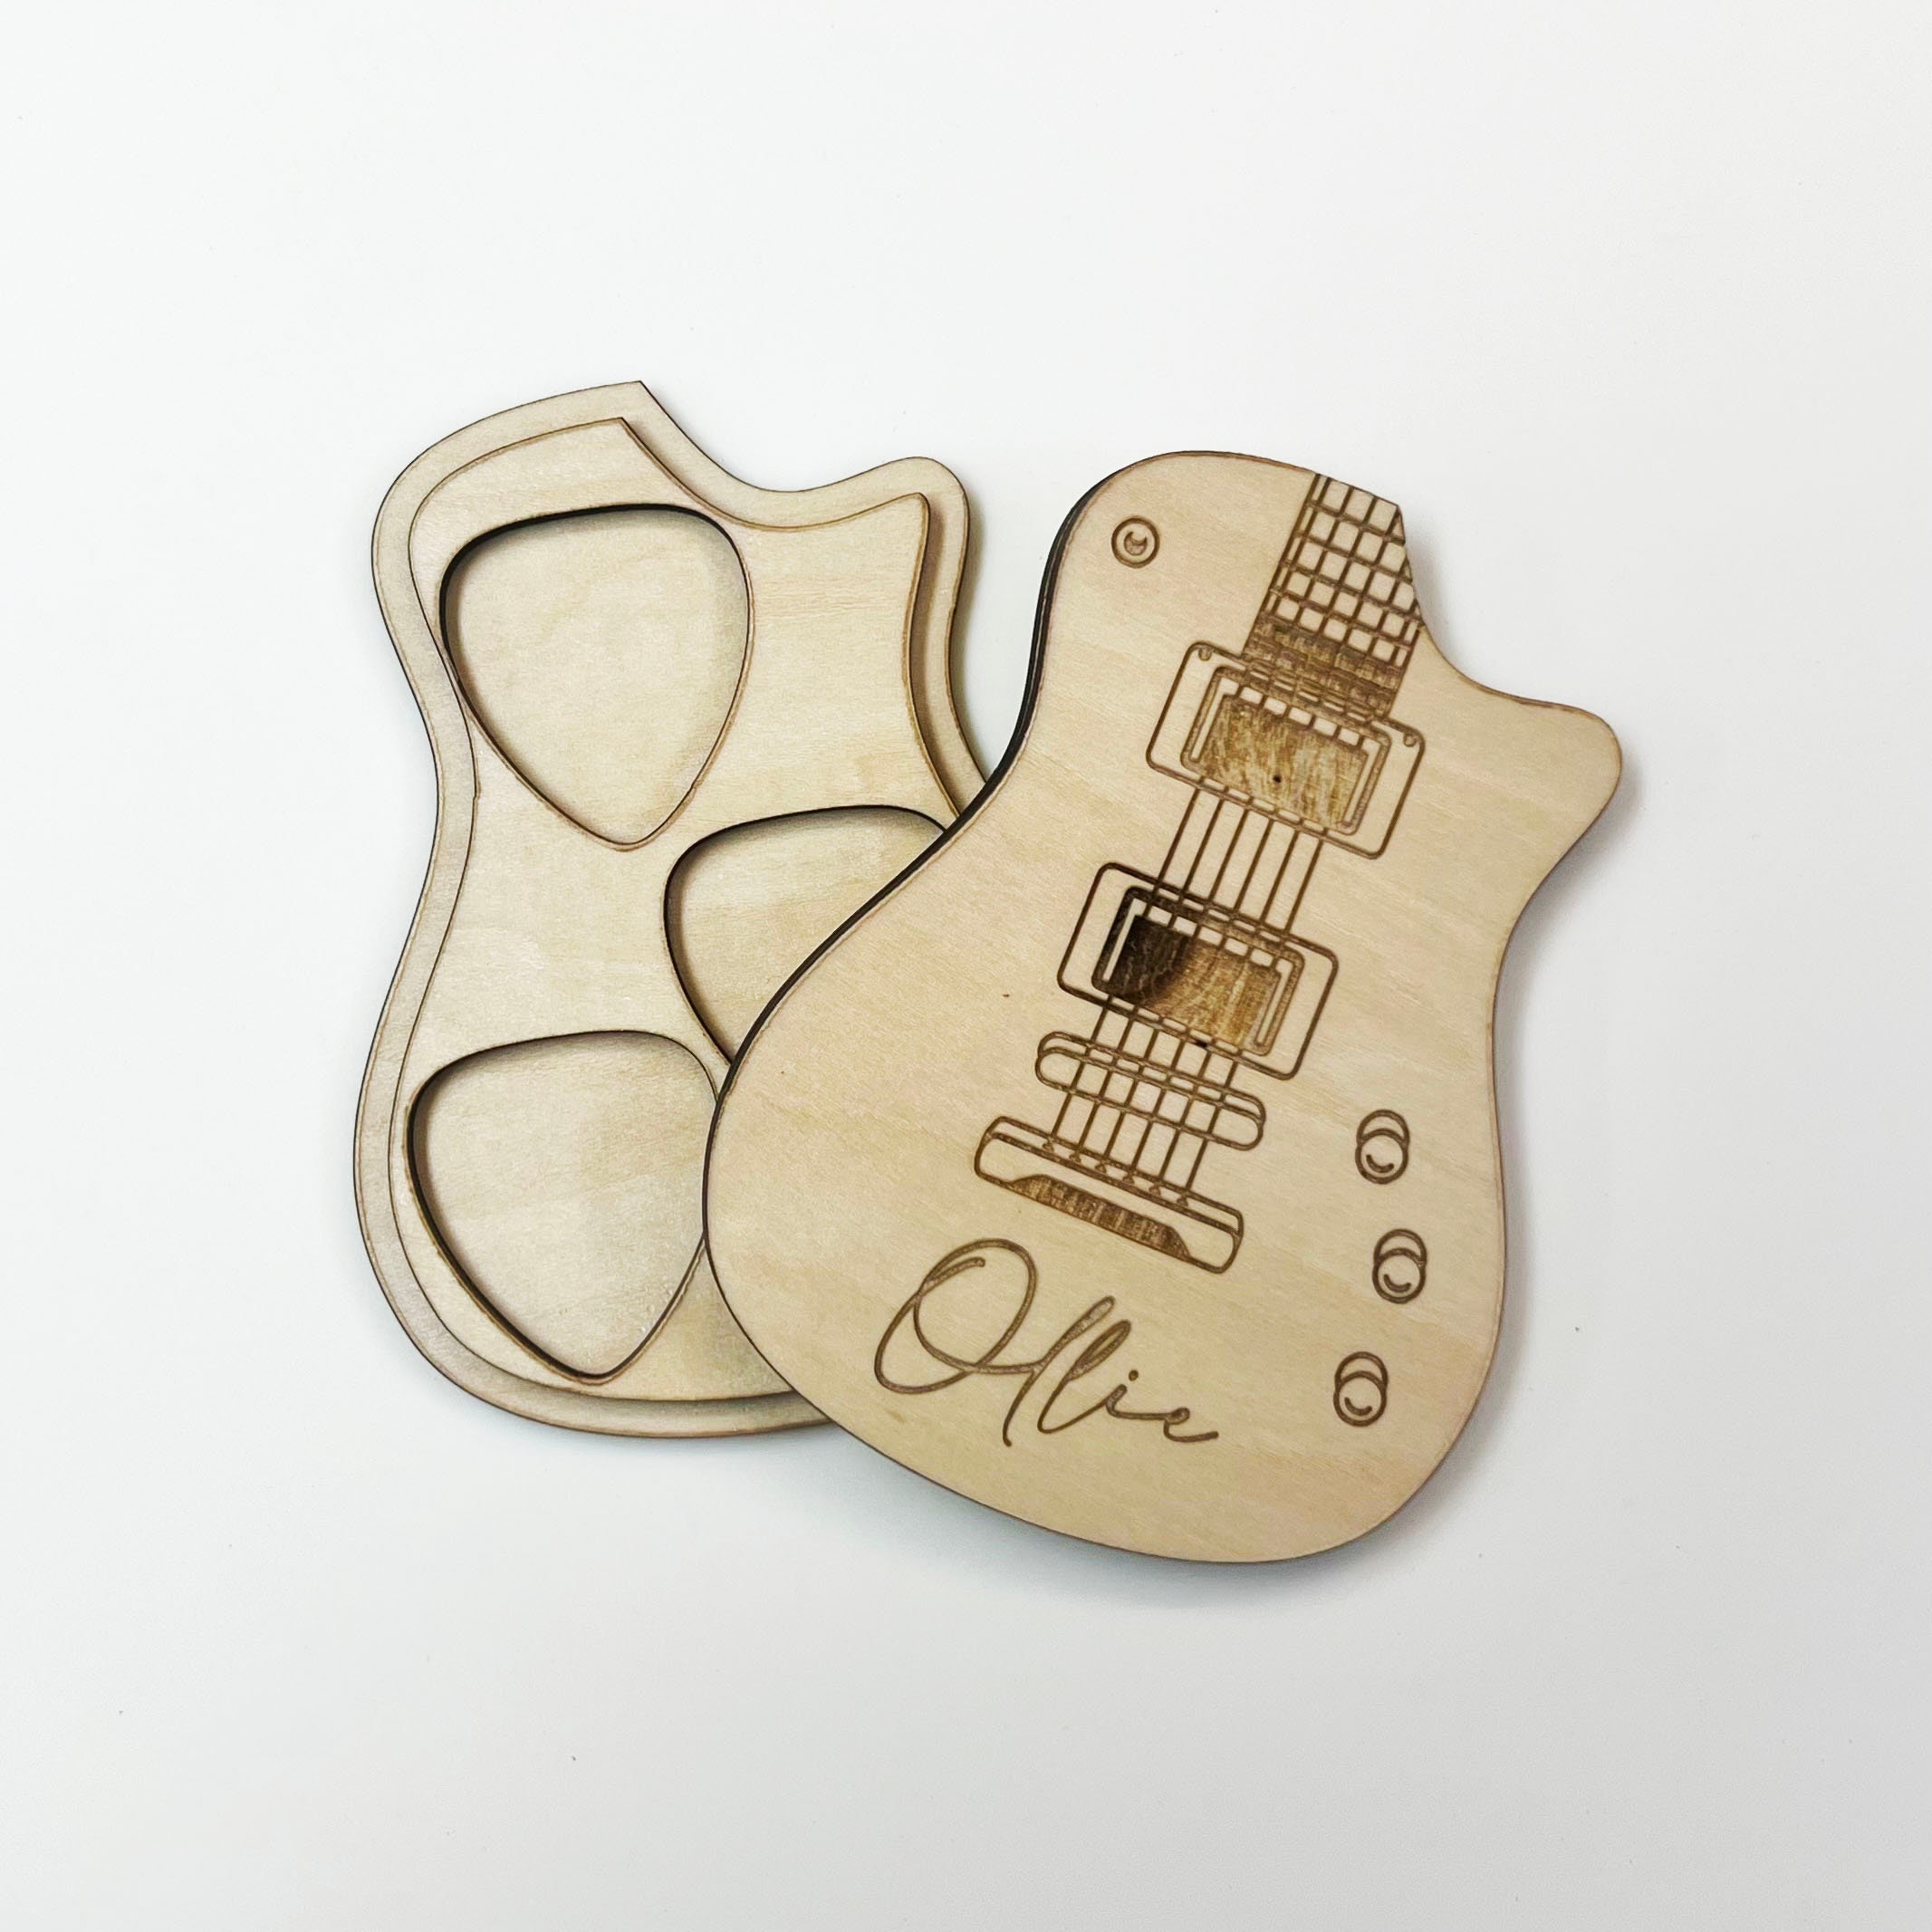 Picks / médiators de guitare en bois personnalisé avec étui à installer sur  la guitare. : acheter des objets Beatles, Lennon, McCartney, Starr et  Harrison